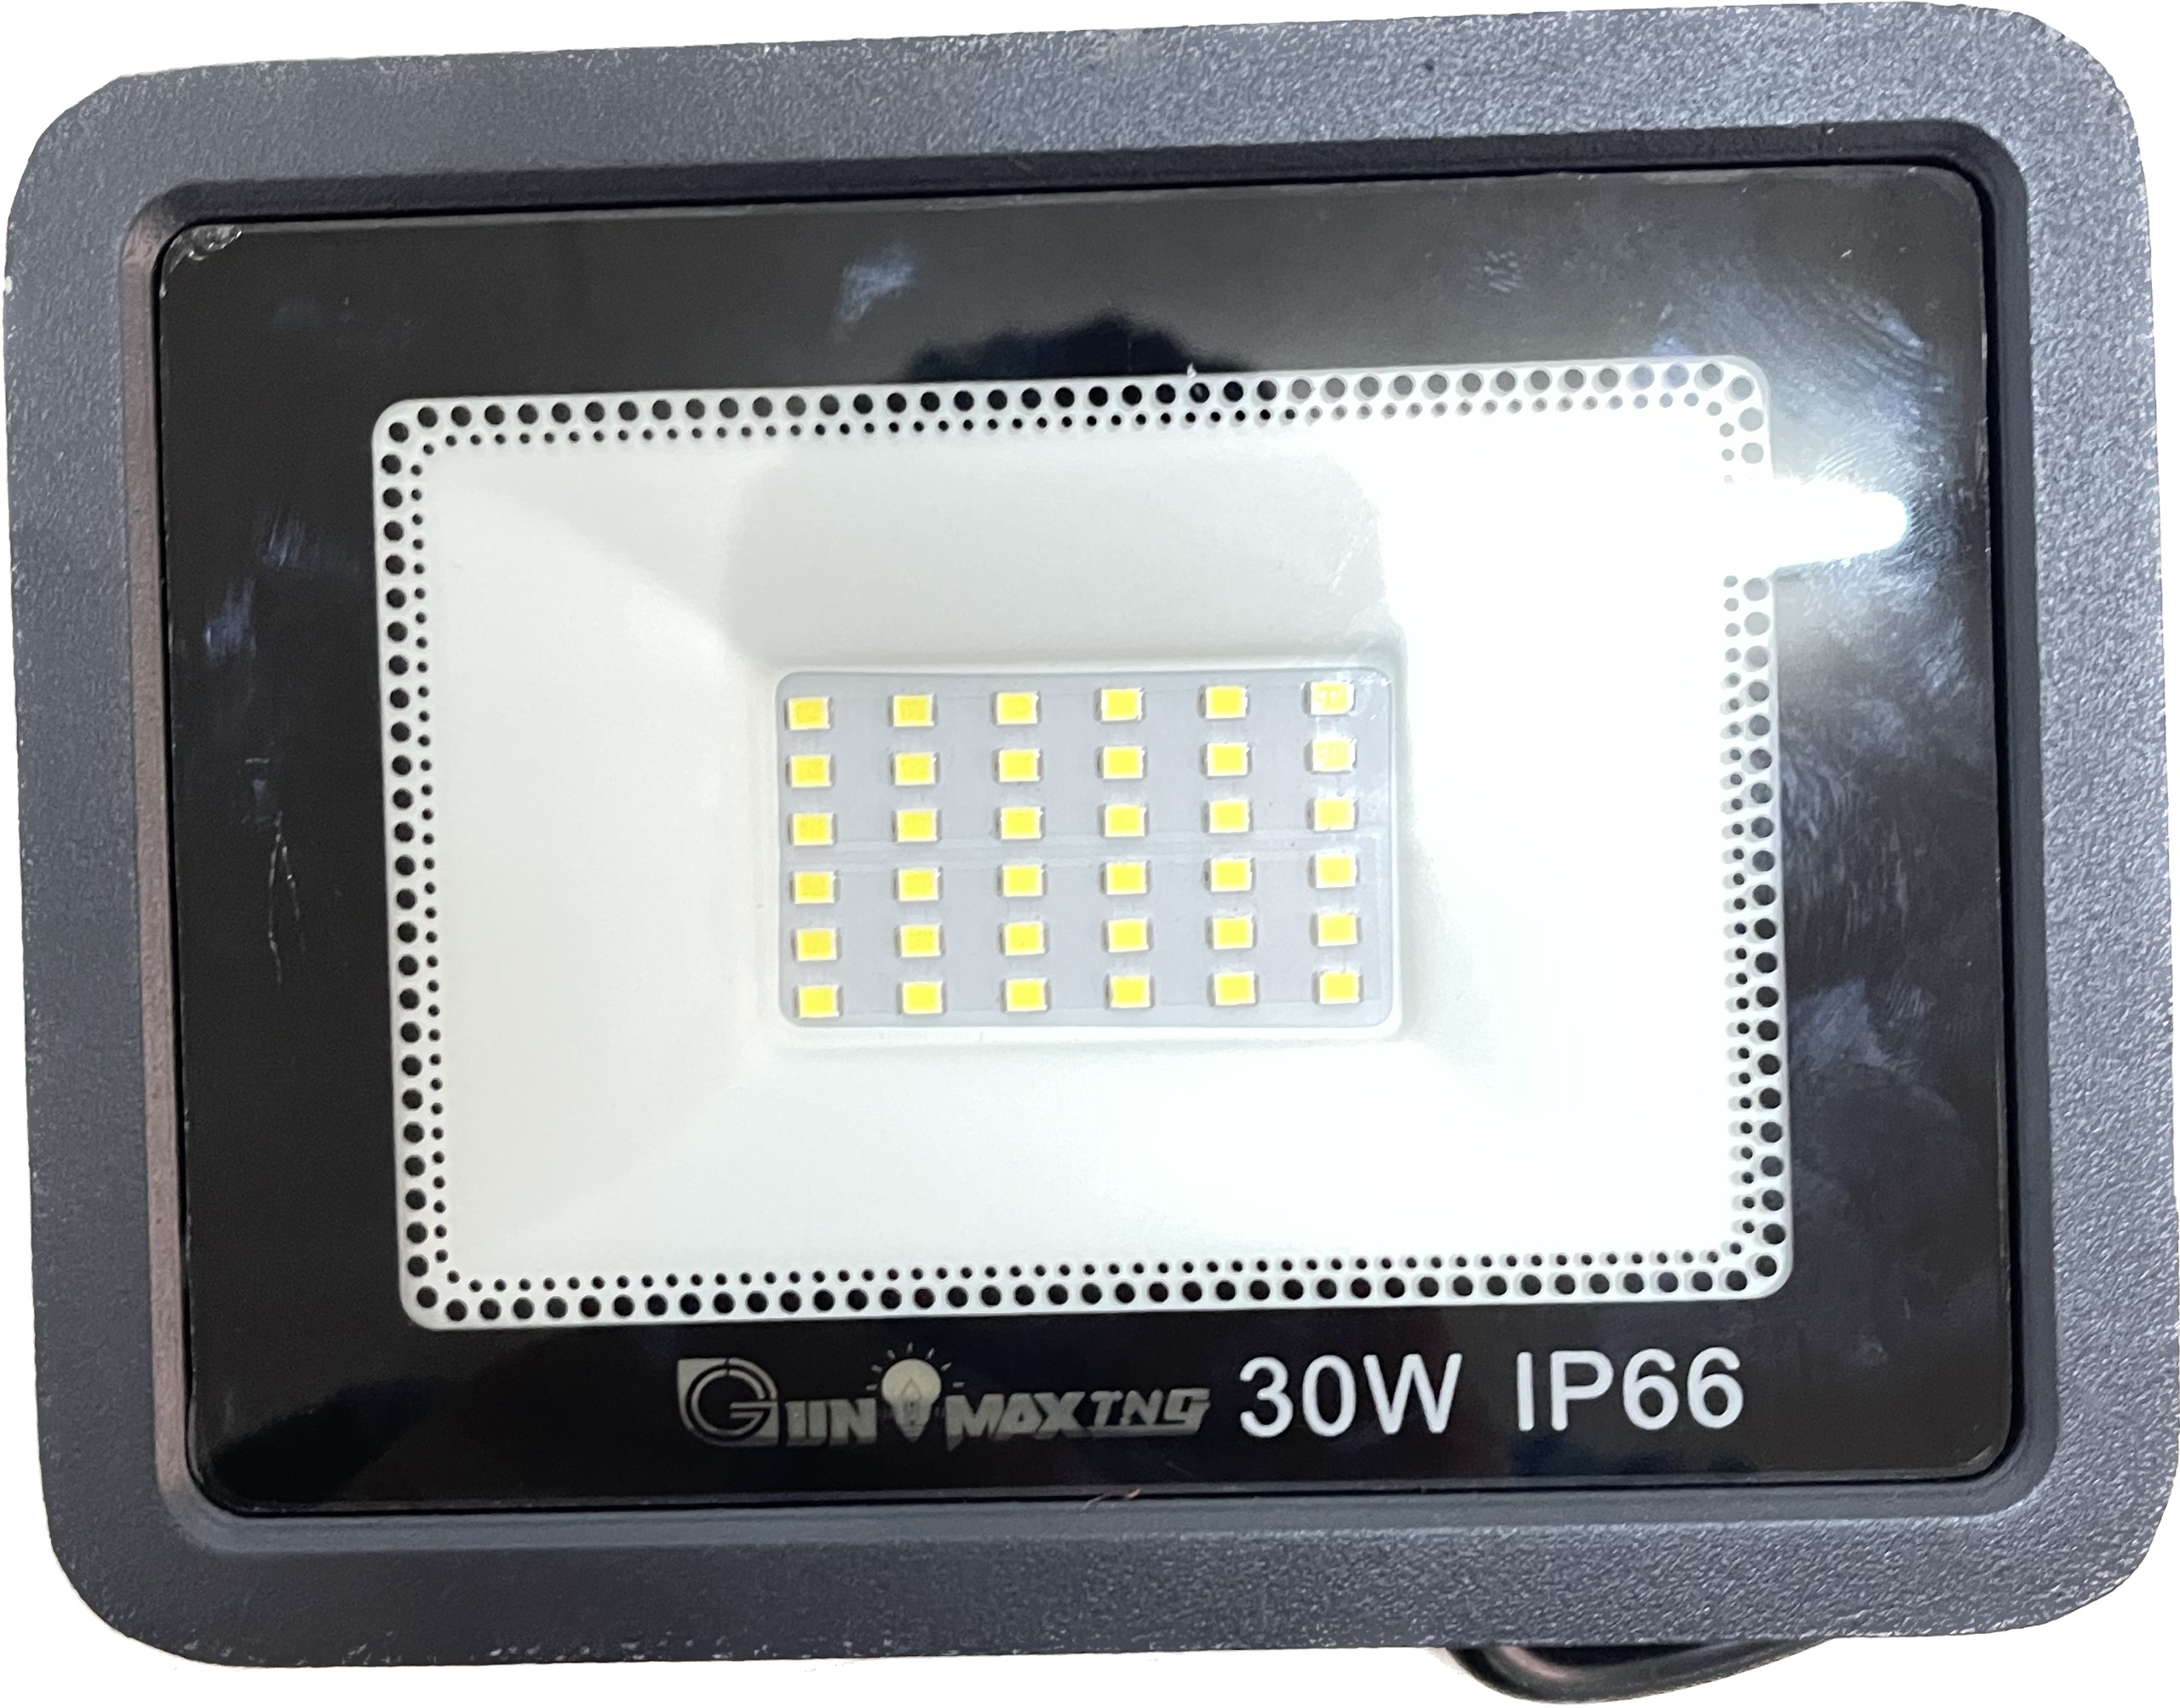 Đèn LED pha 30W- IP66- cap cấp - Gunmax TNG